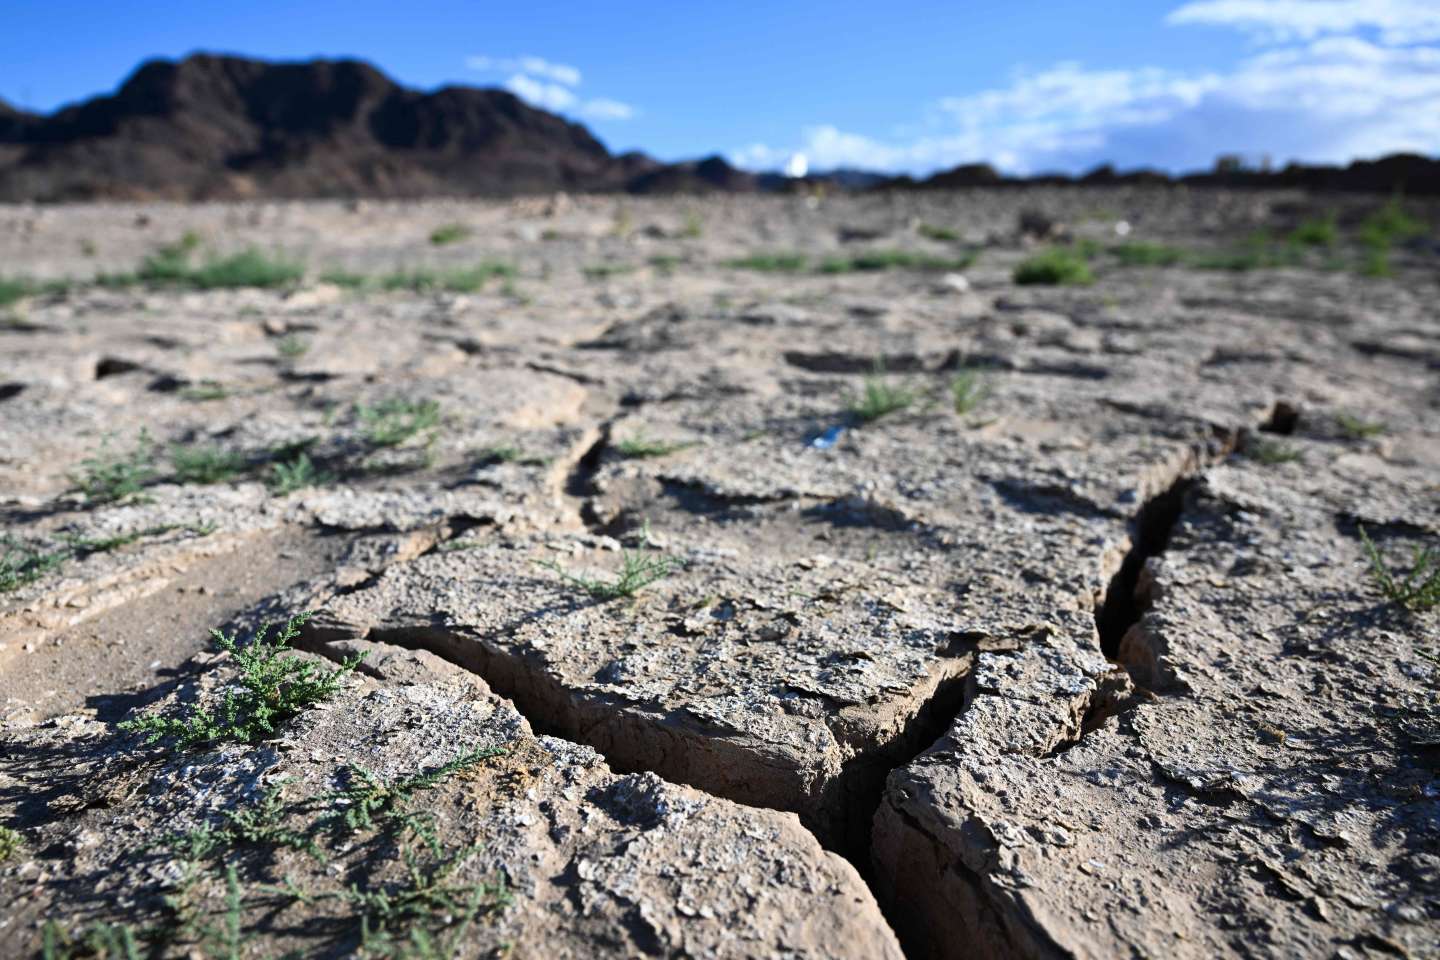 Dans l’ouest des Etats-Unis, la sécheresse proche du « point de non-retour », Washington contraint de rationner l’eau du Colorado